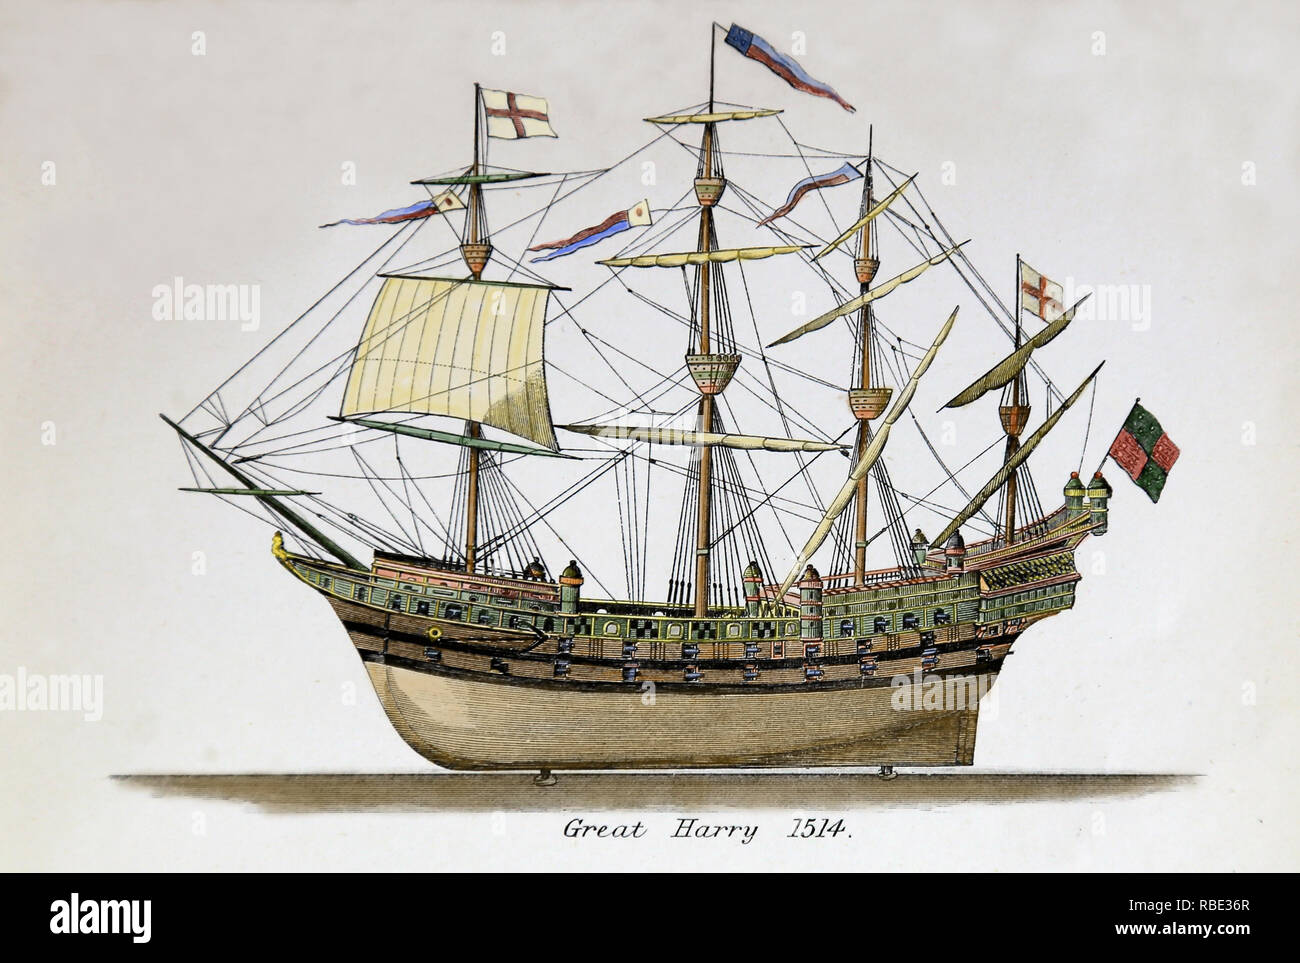 Der große Harry. Berühmte englische Kriegsschiff 1514 erbaut im Auftrag des Königs Henry VIII. Gravur, 18. Später Färbung. Stockfoto